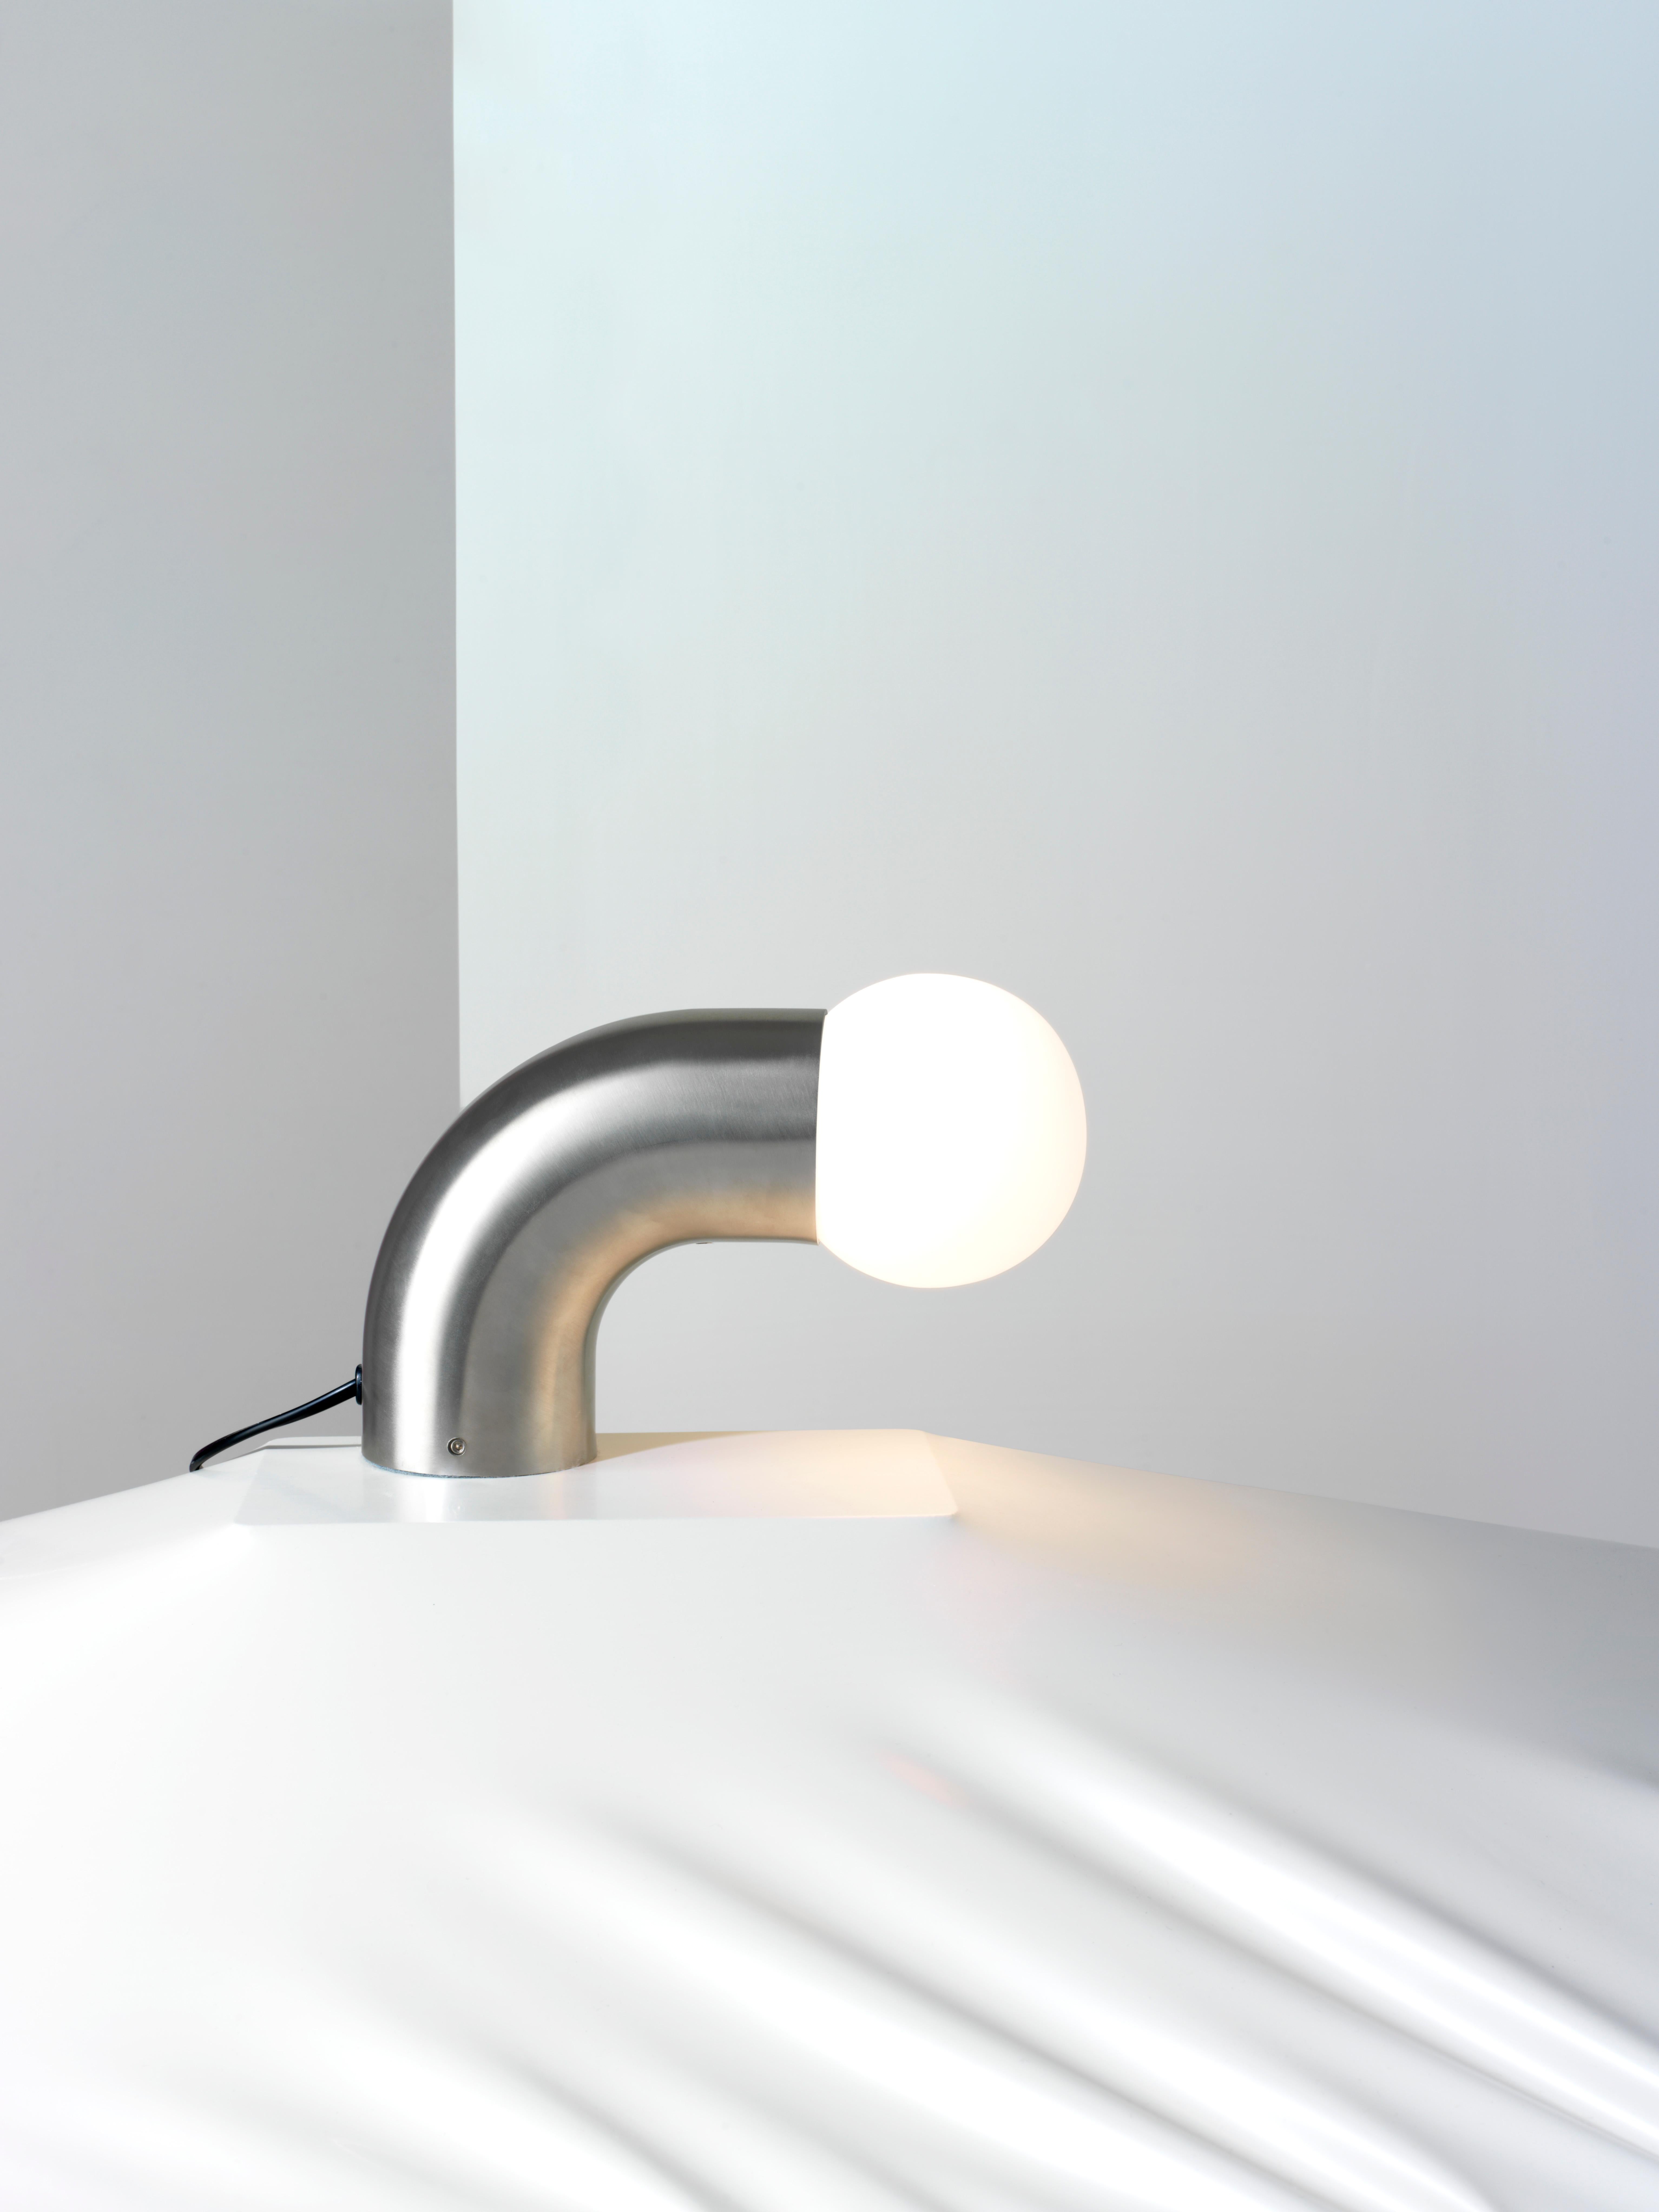 Lampe de table en tube d'acier inoxydable extrudé de 76 mm.

Cette table minimaliste est réalisée dans l'un des styles emblématiques de James Stickley, le métal tubulaire. Ces magnifiques lampes de table peuvent sembler minimales dans leur design,